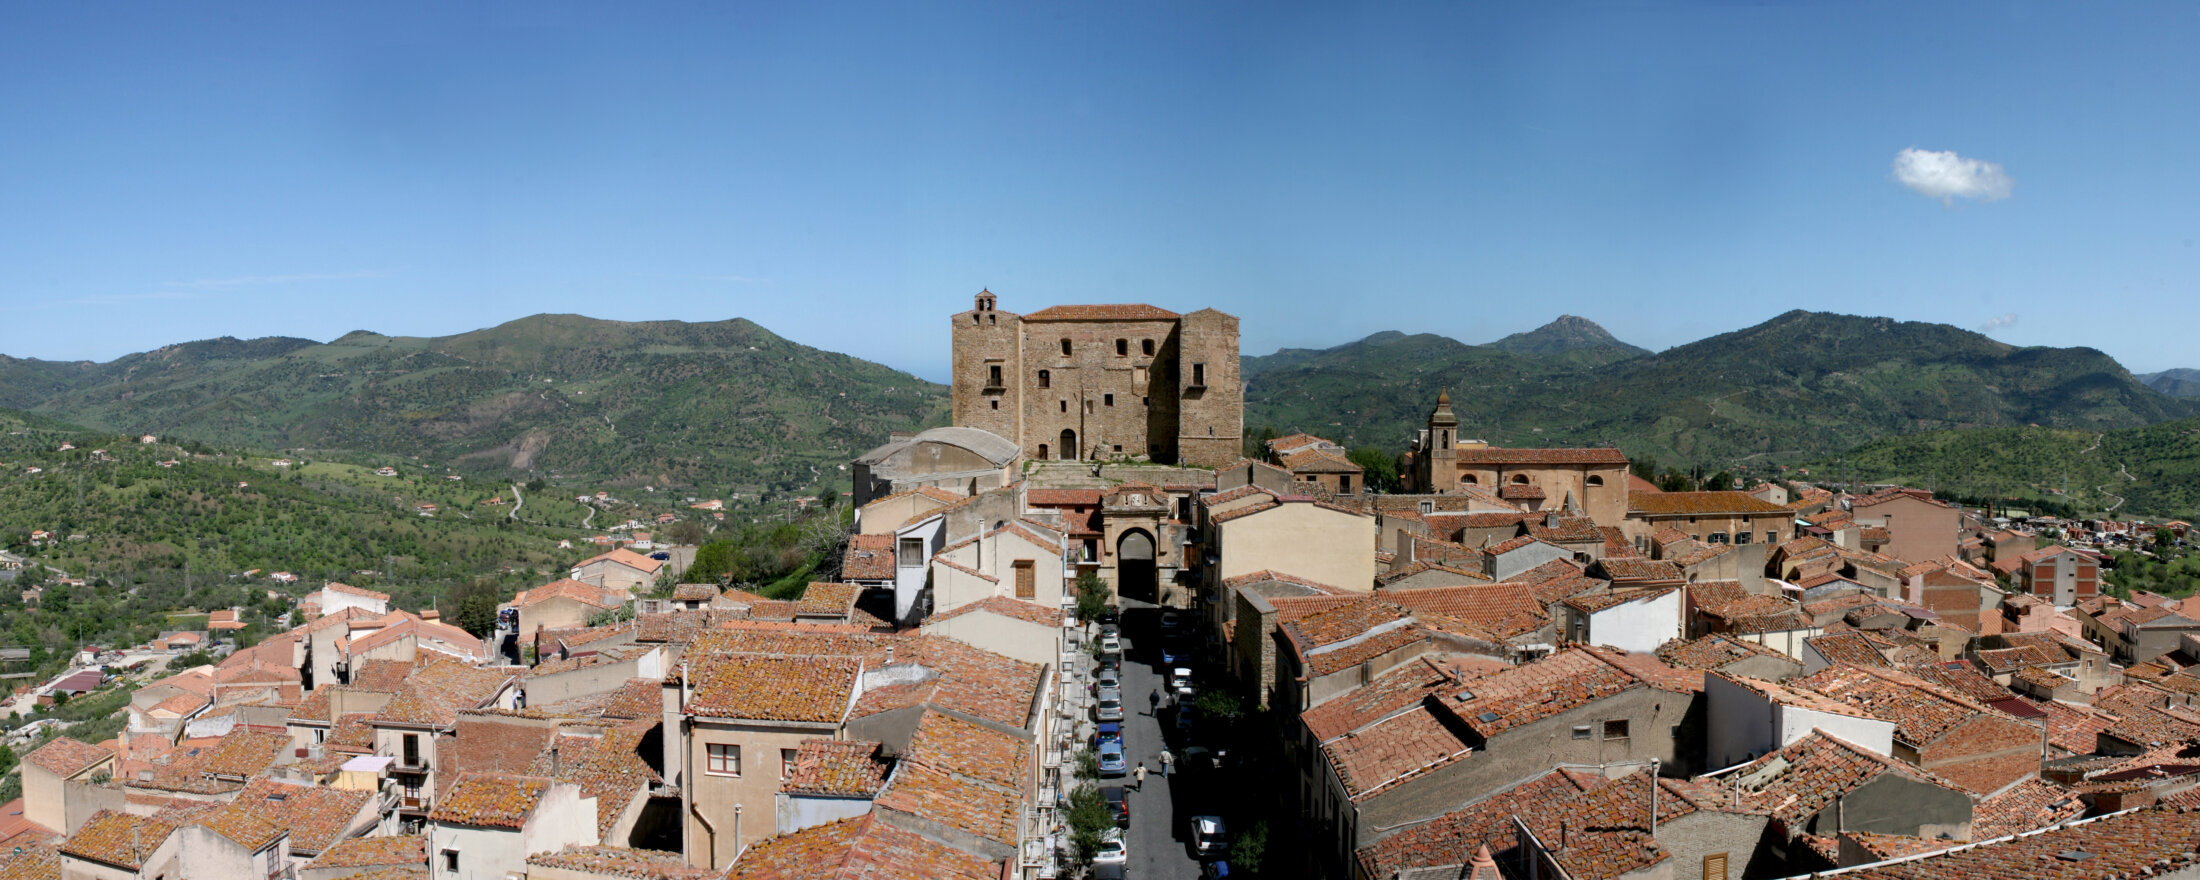 Il castello e la via Sant'Anna